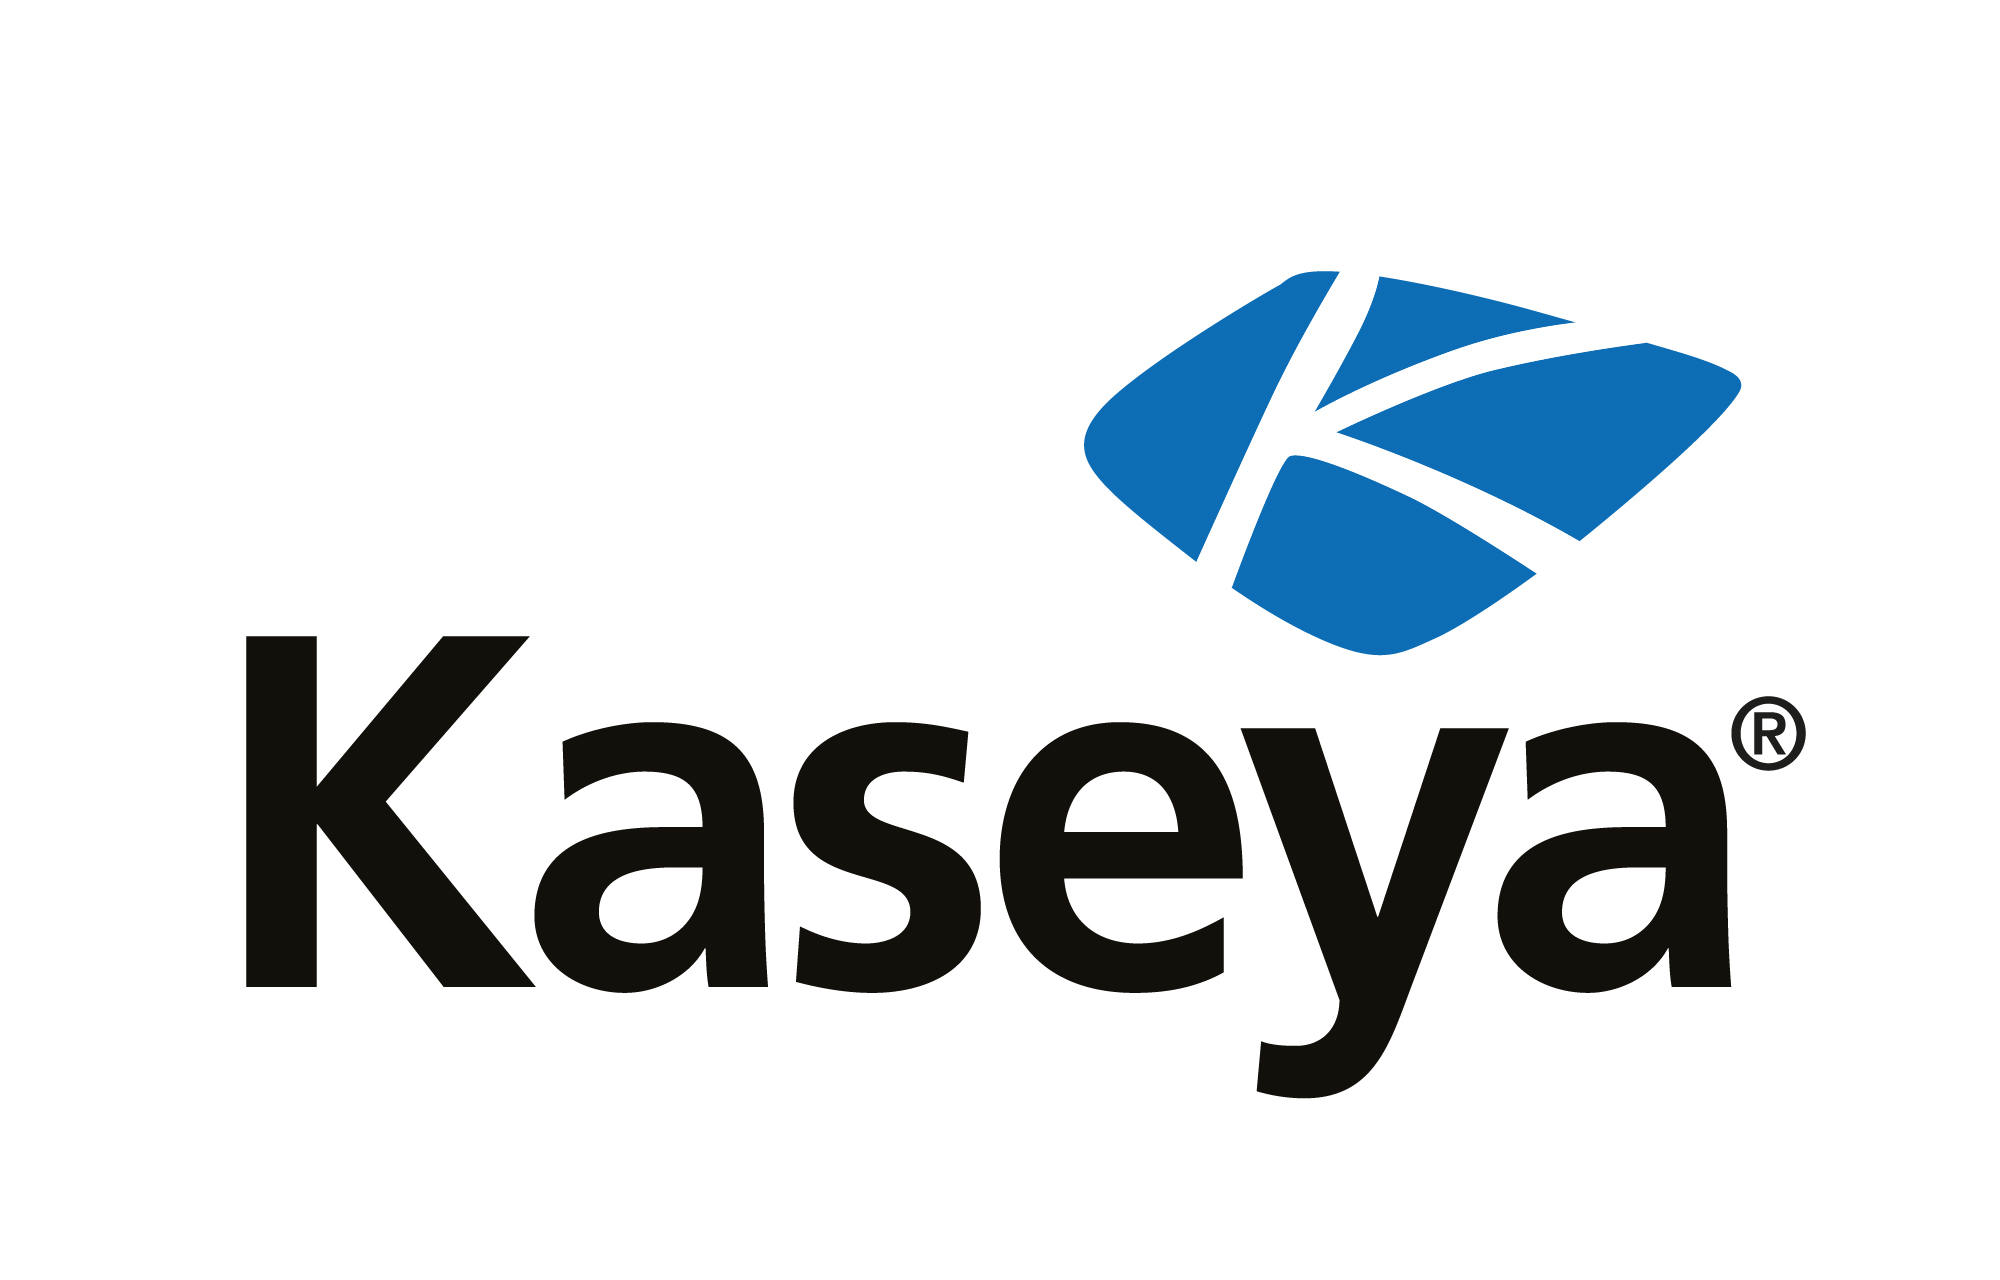 Kaseya-Studie zur IT in KMU: Modernisierung der IT stagniert, Bedarf an IT-Management nimmt zu